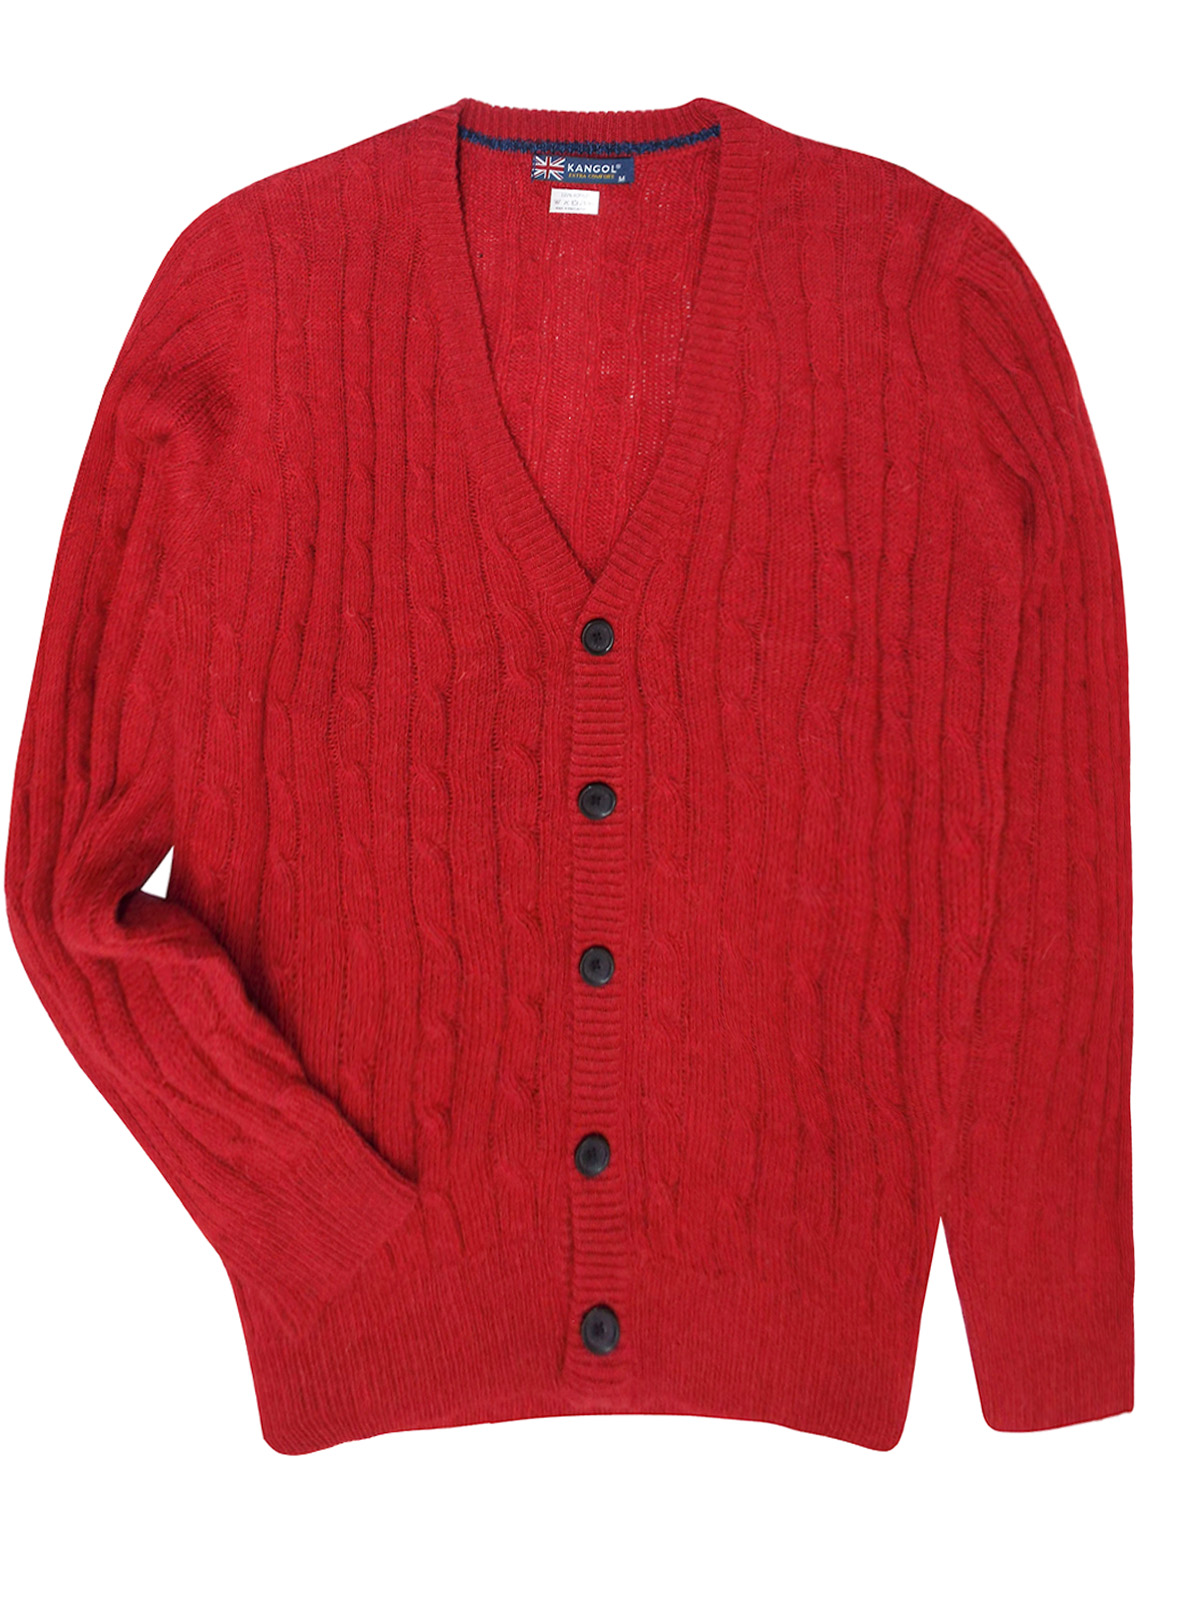 Kangol - - K4NGOL RED Mens V-Neck Knitted Cardigan - Size Medium to XLarge